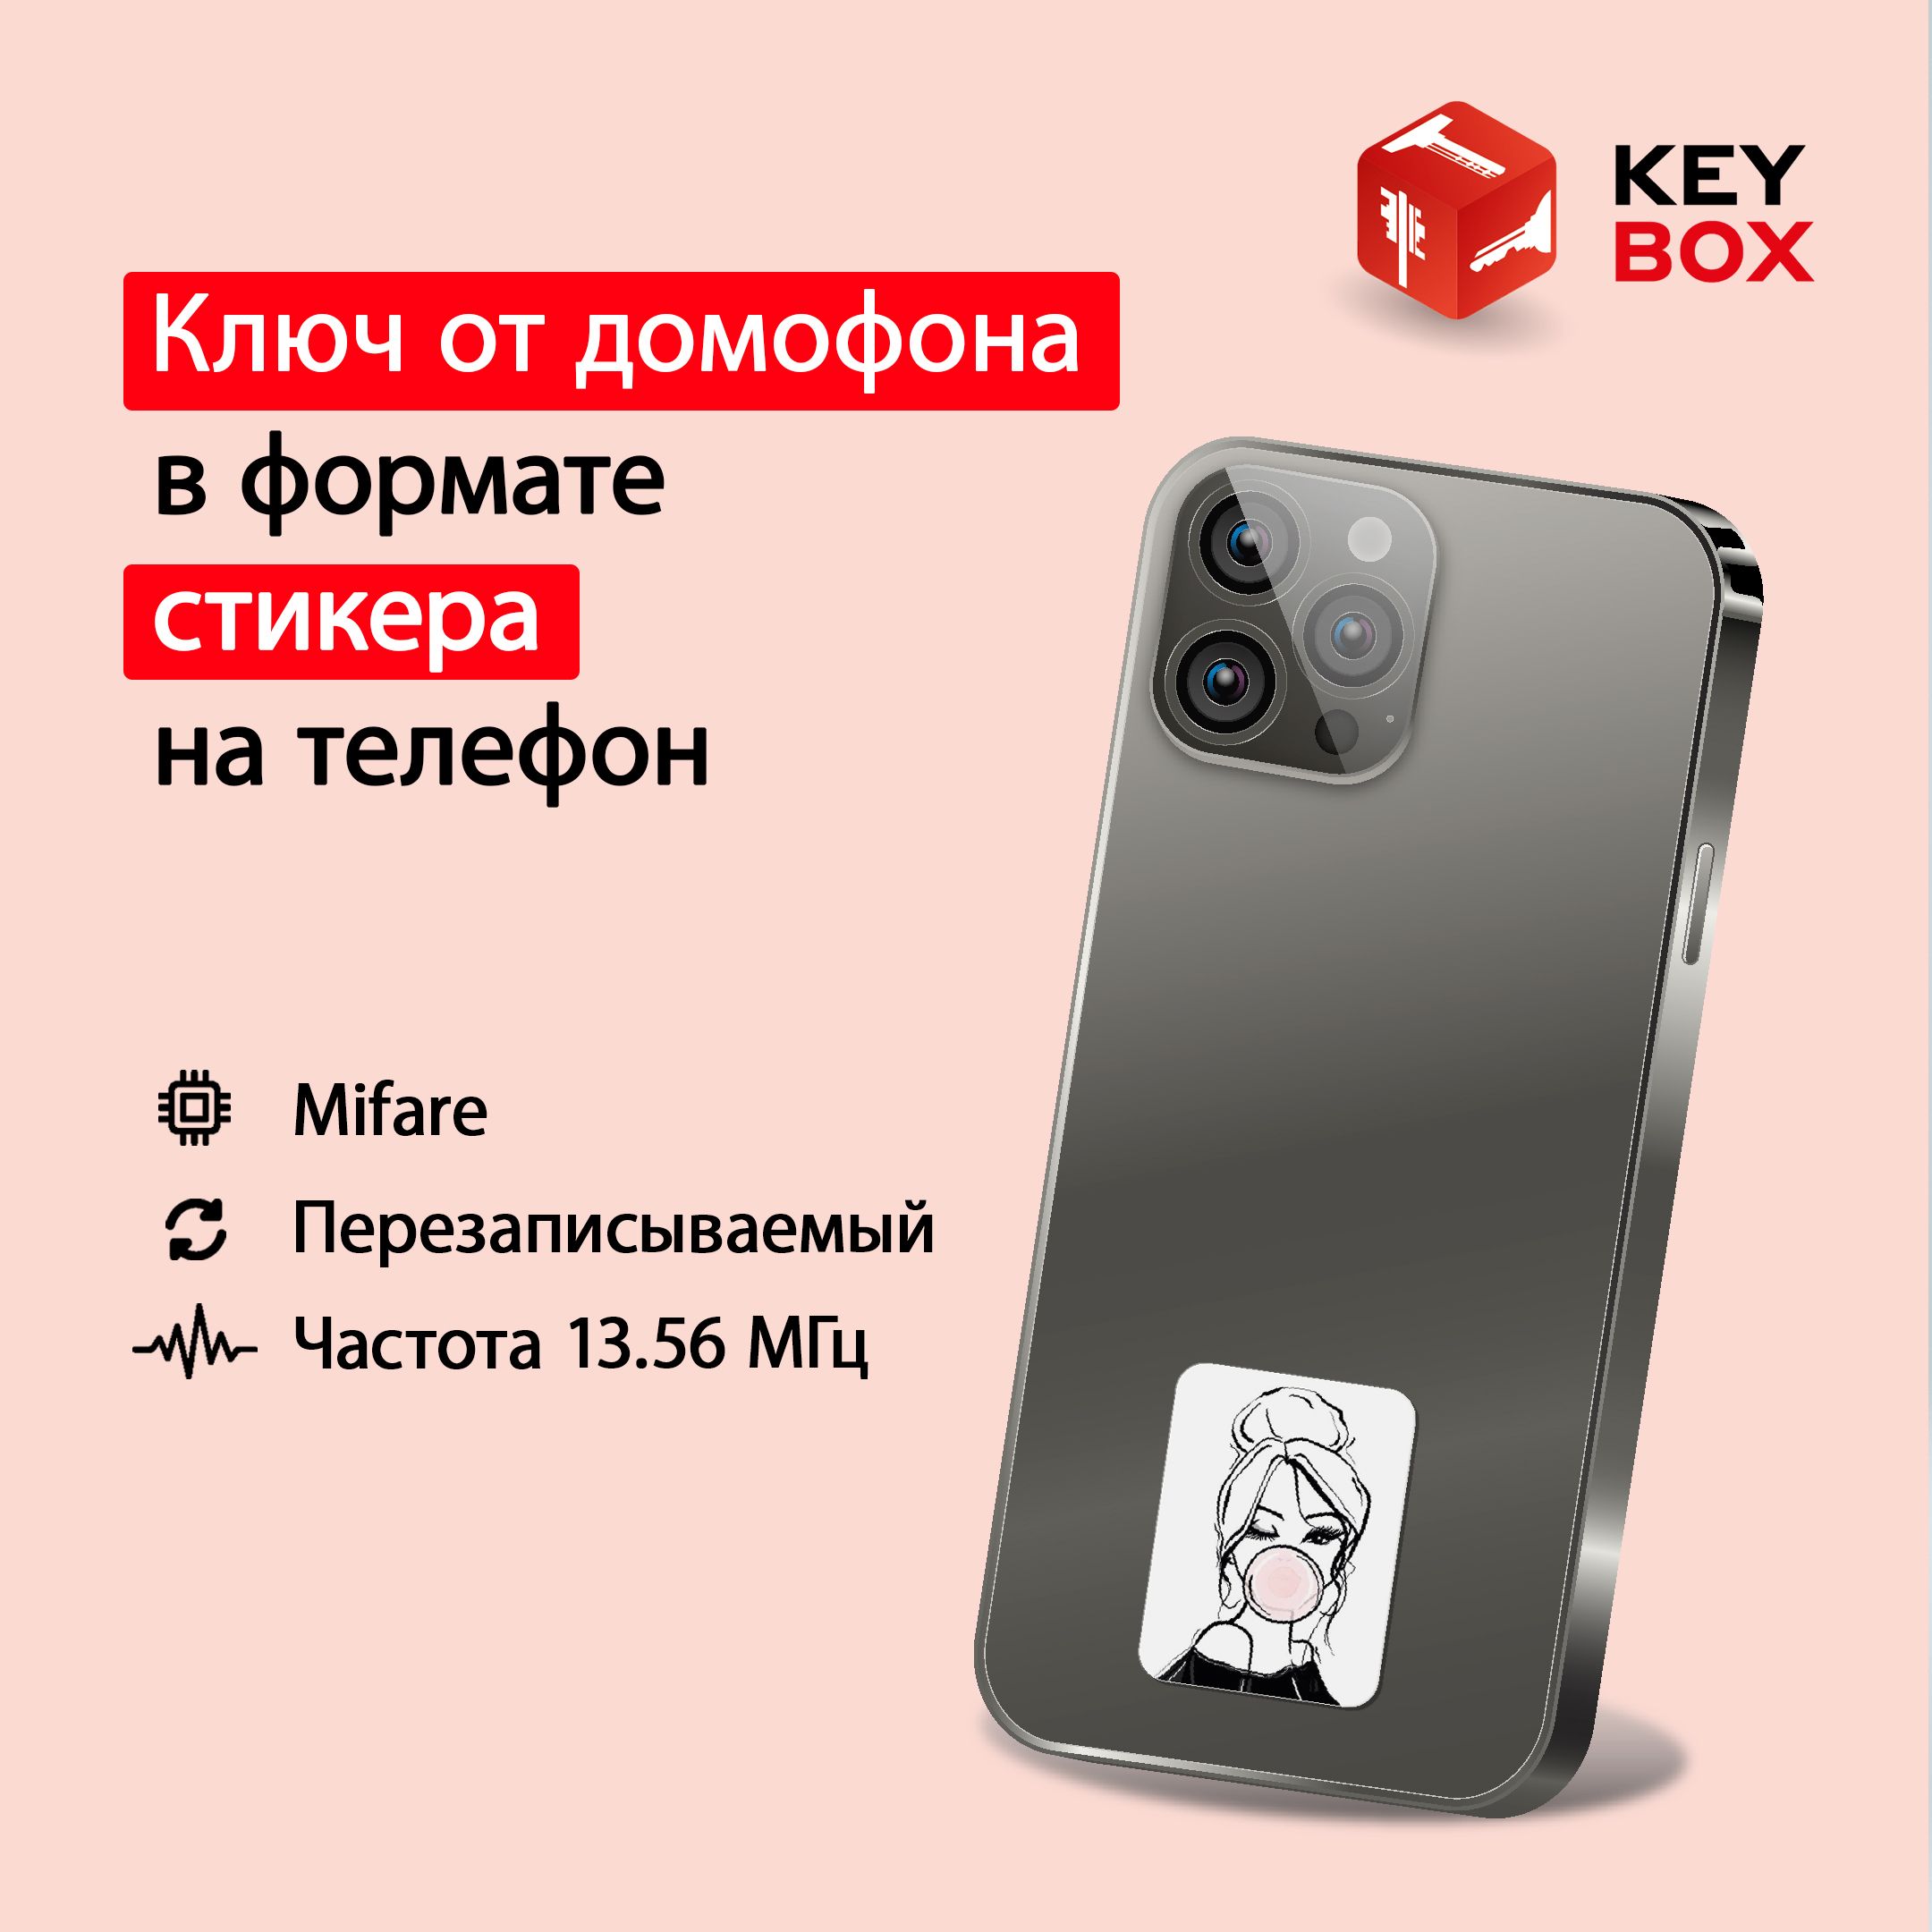 Ключ-стикер для домофона на телефон Keybox Mifare St003, Девушка телефон музыкальный